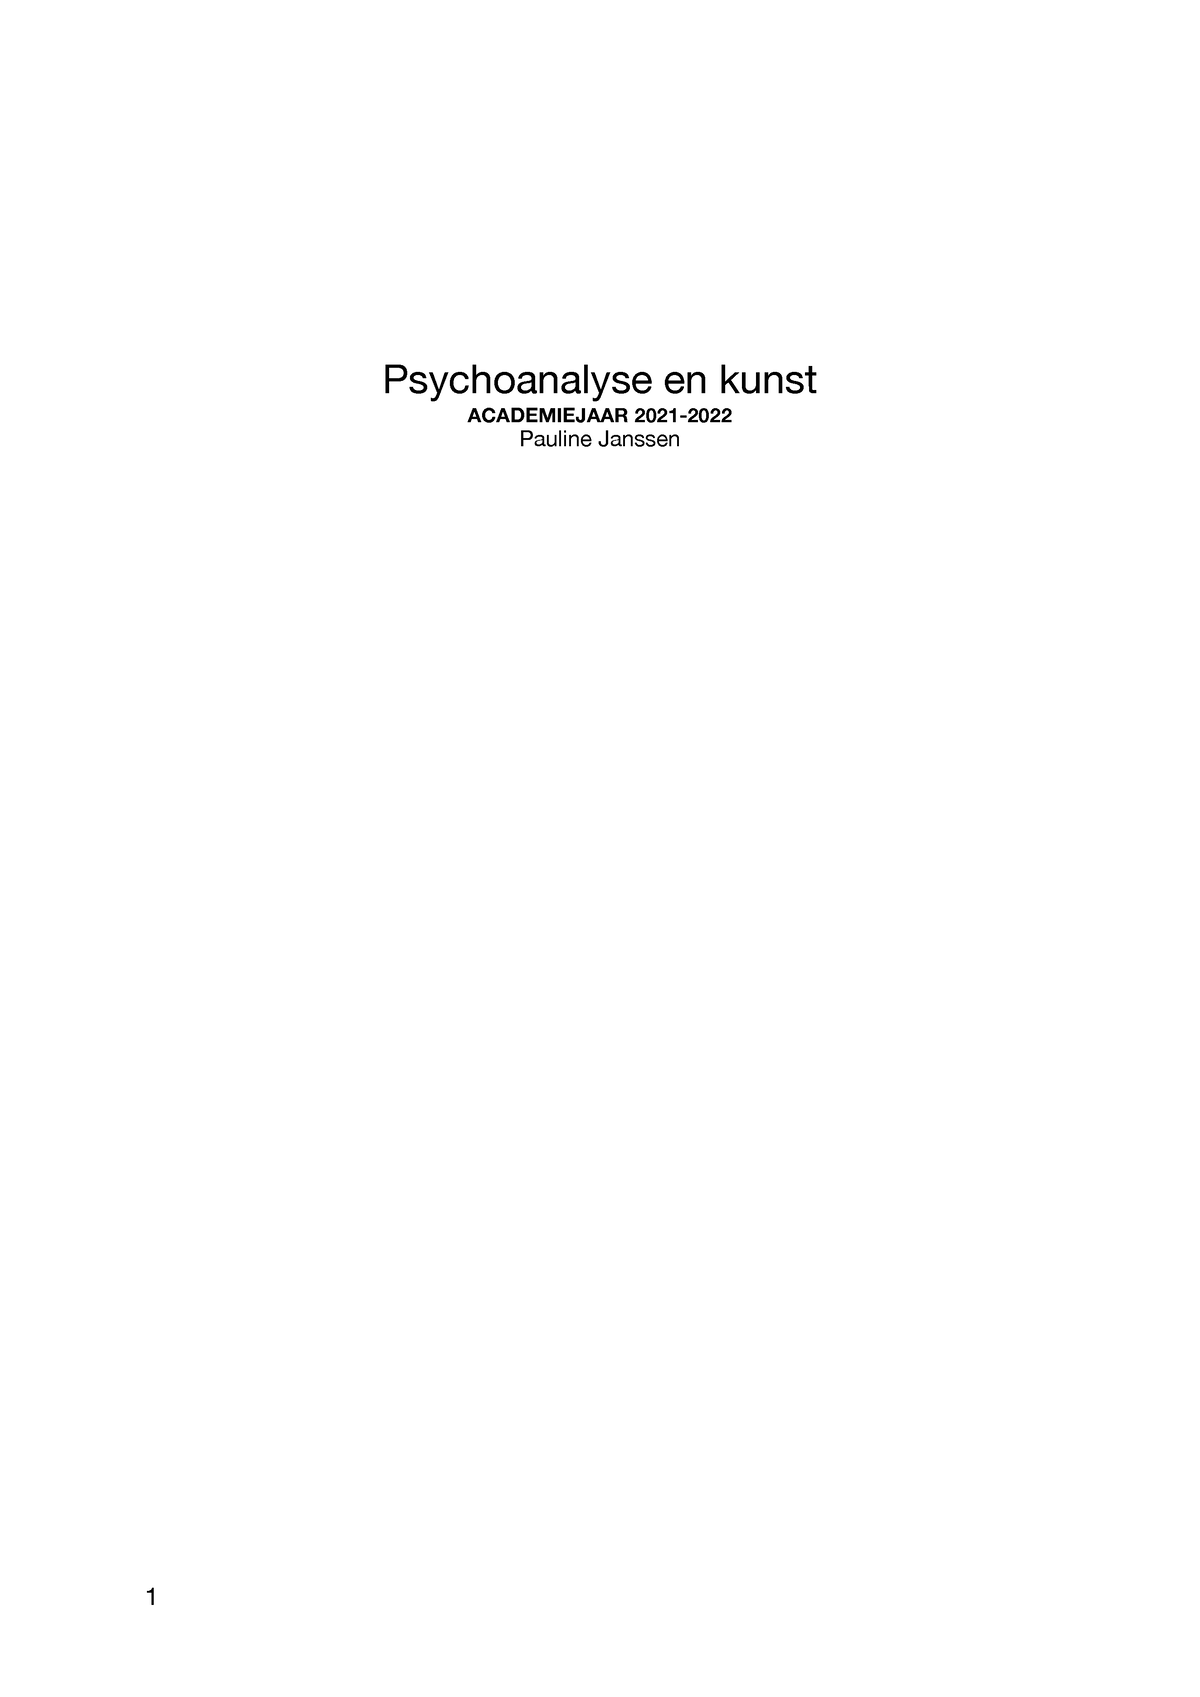 Psychoanalyse notas - Psychoanalyse en kunst ACADEMIEJAAR 2021- Pauline Janssen 1